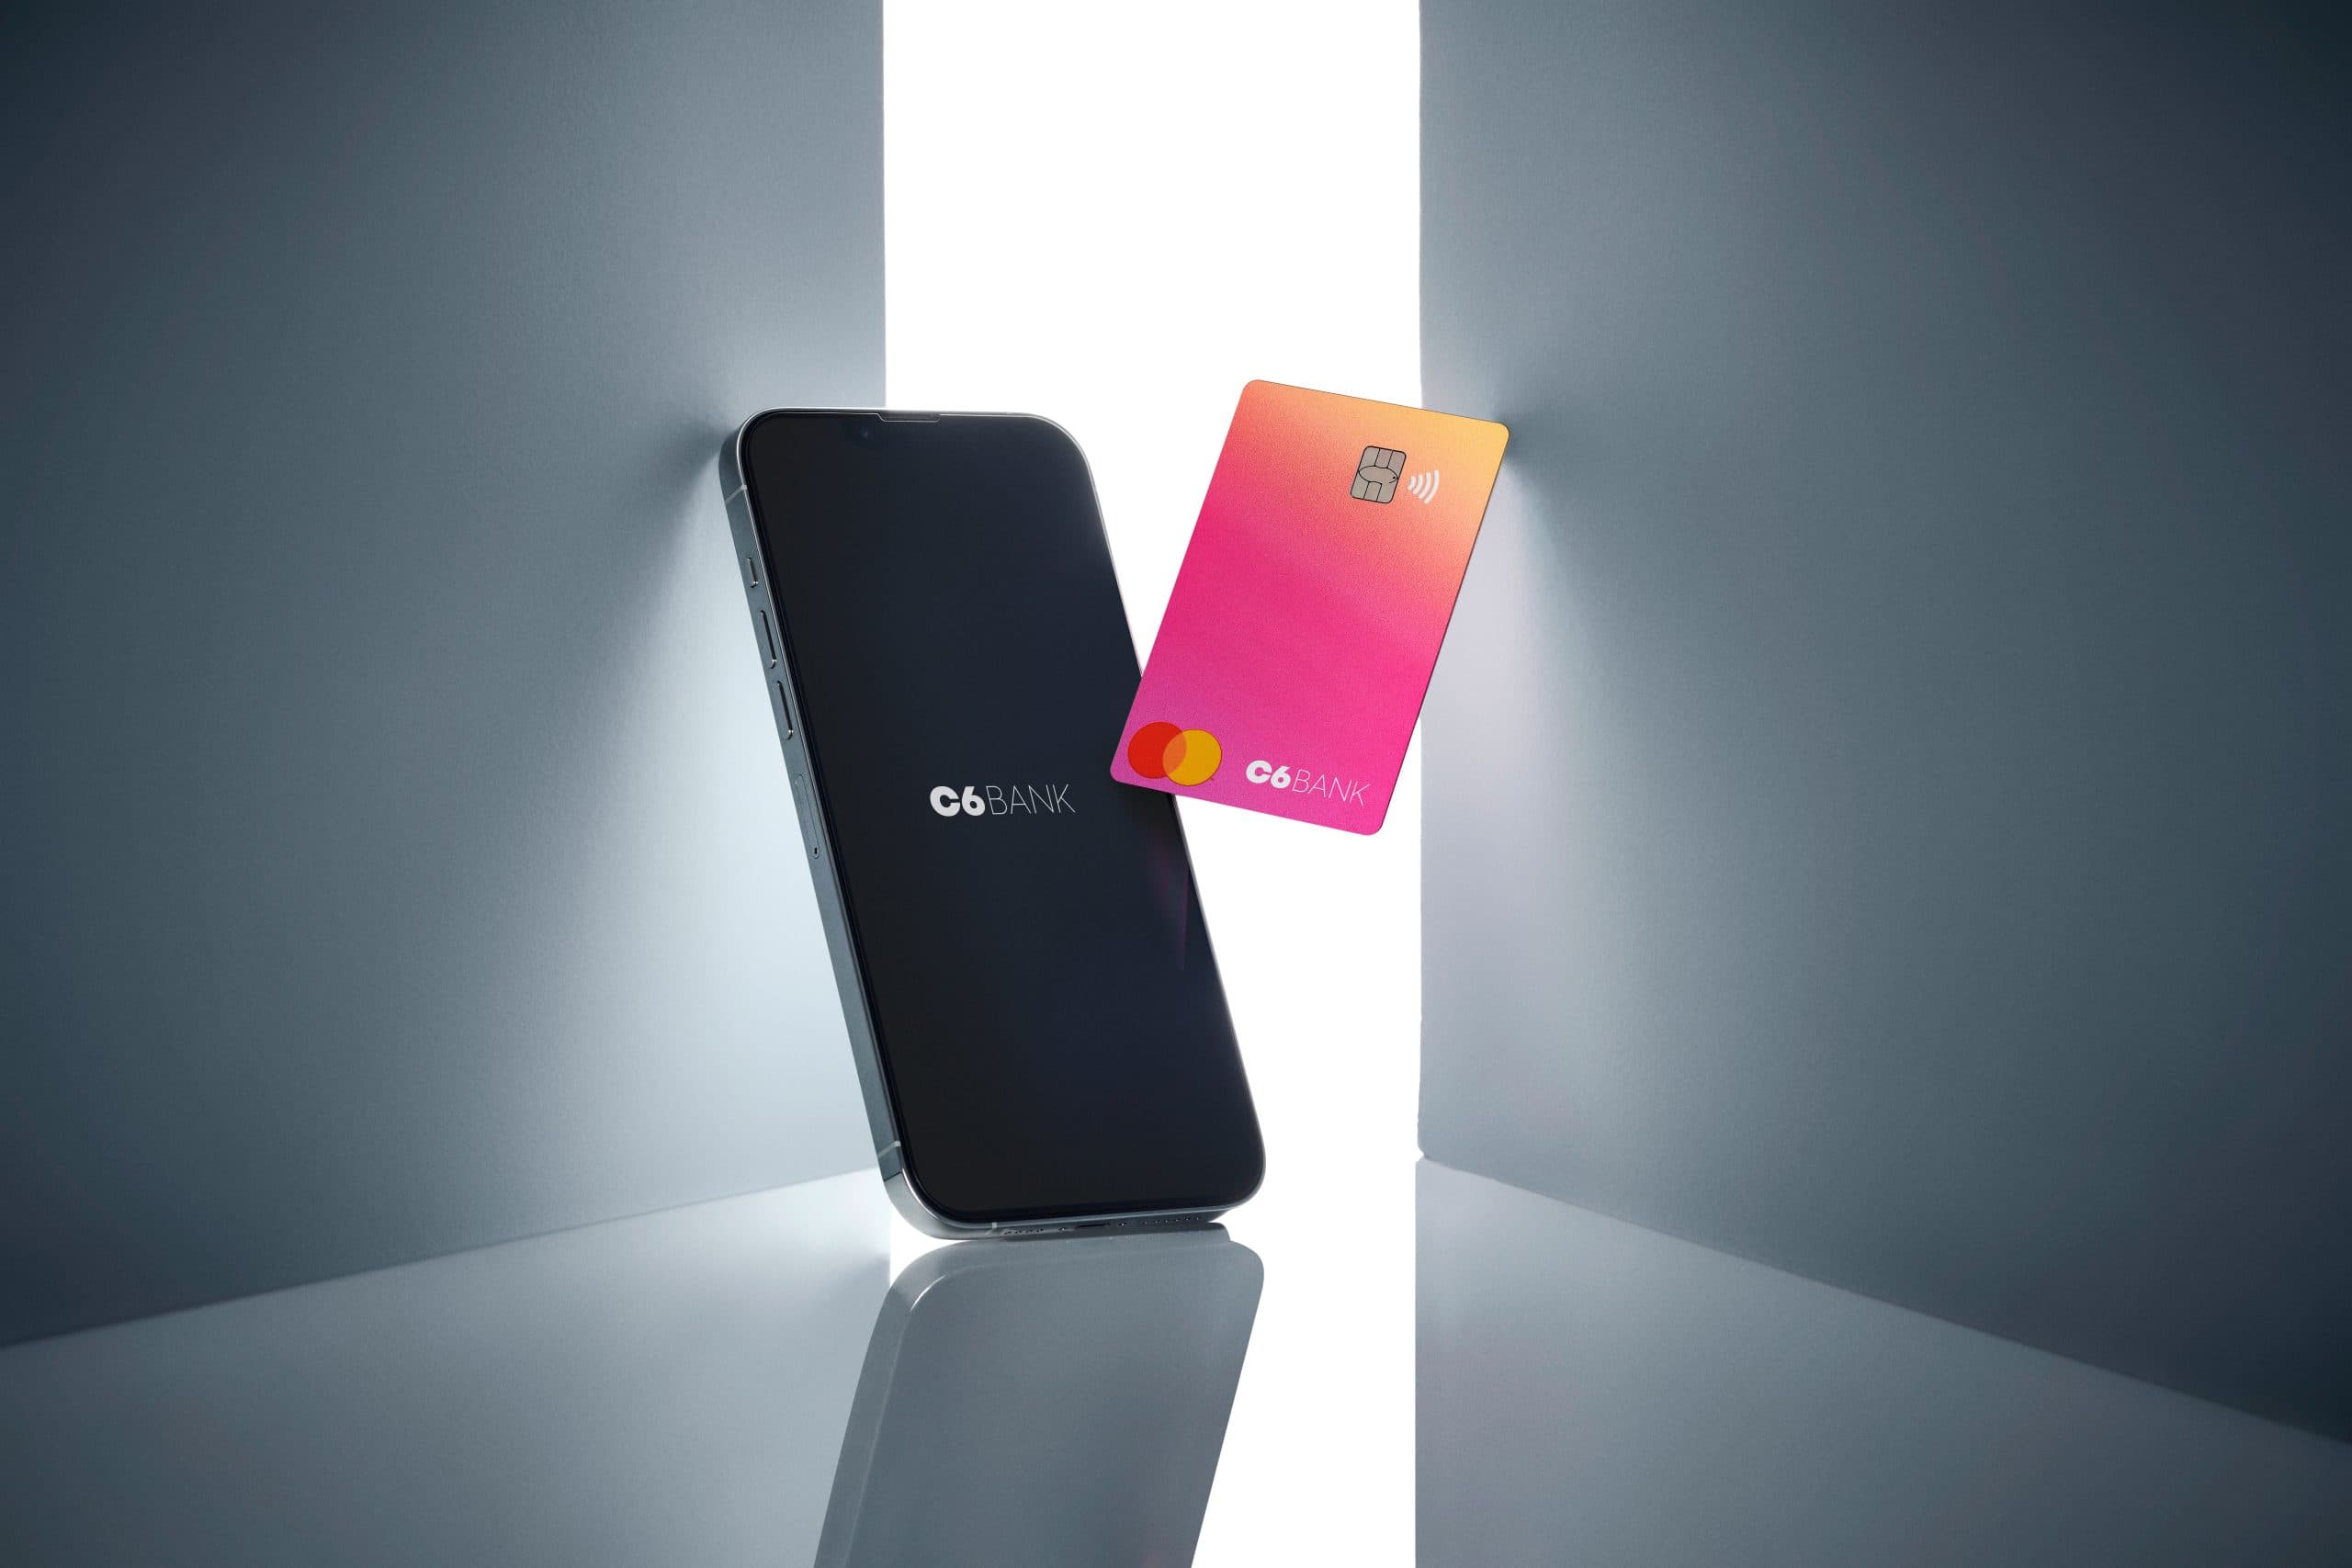 Celular com app C6 Bank aberto e cartão C6 Bank Sunset